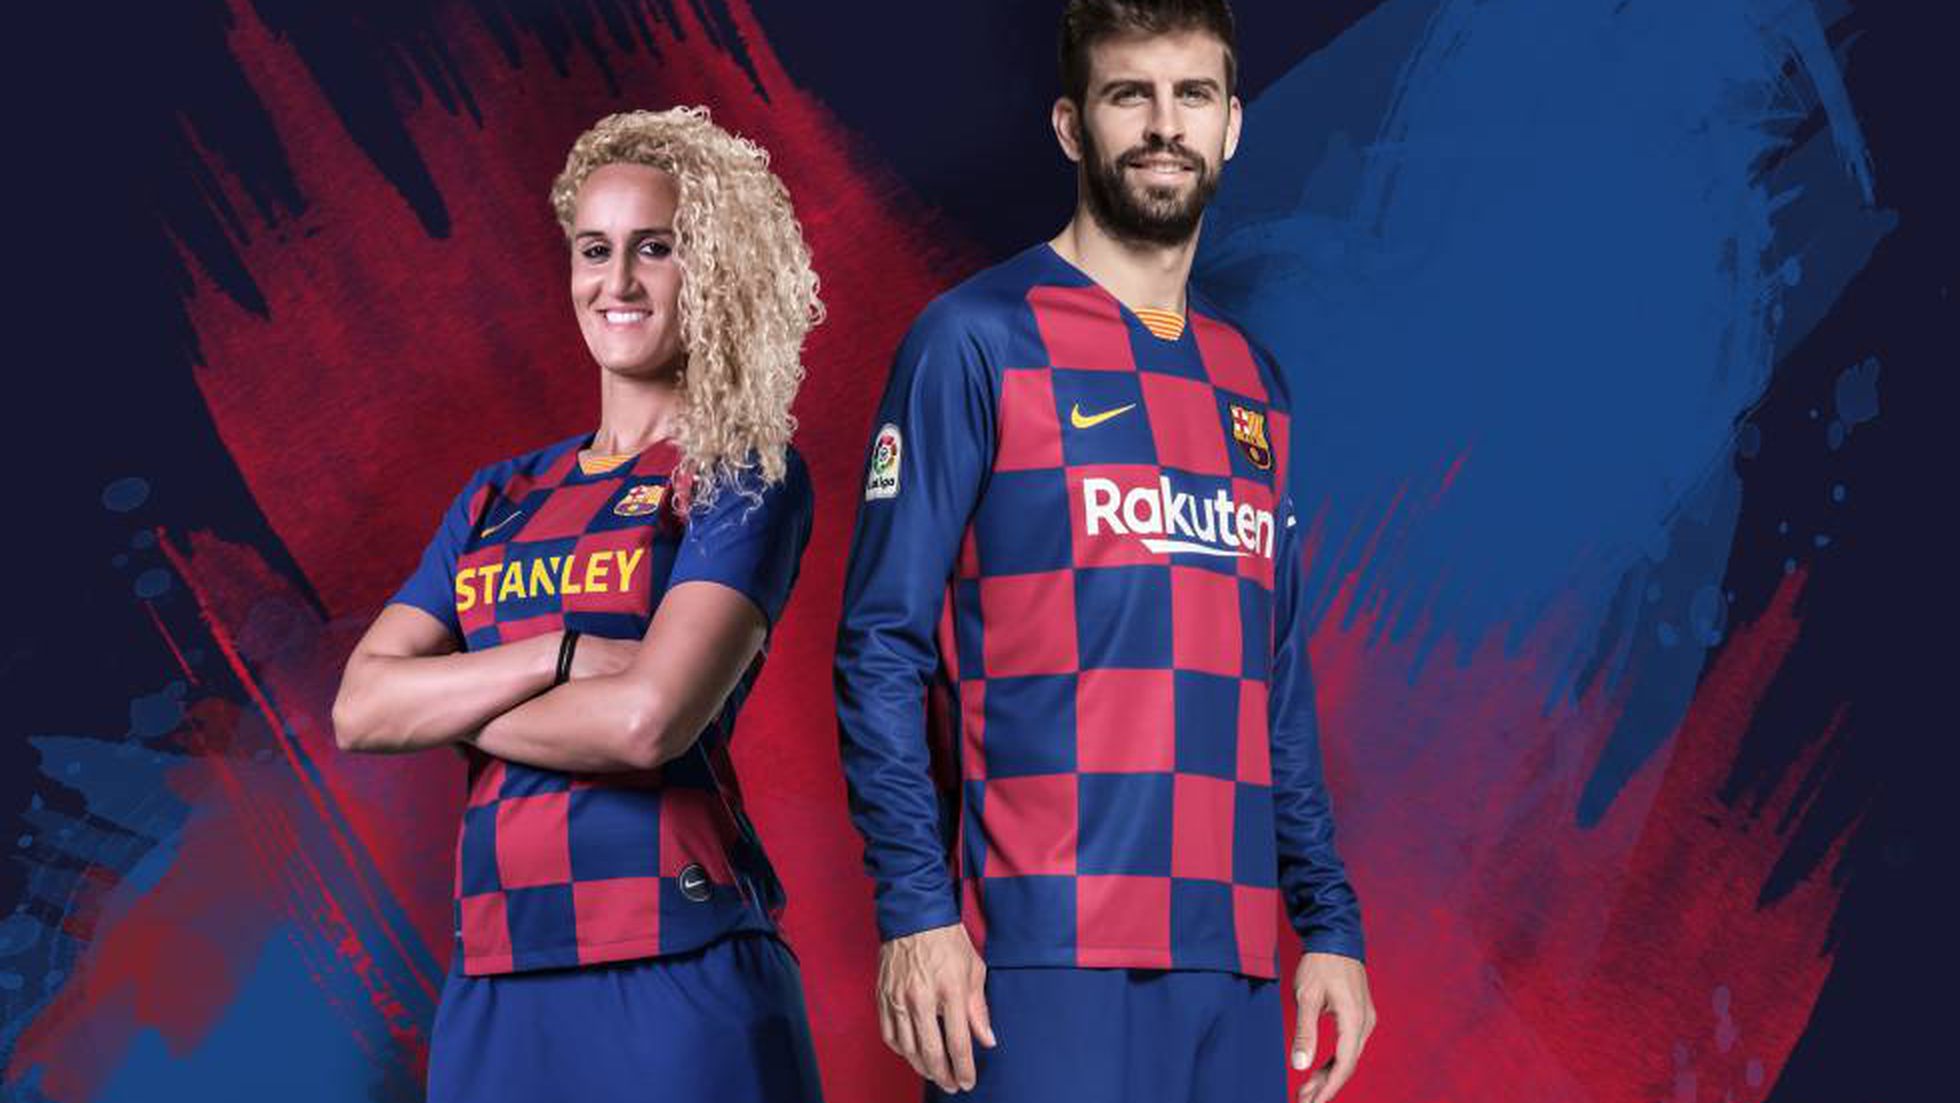 FC Barcelona: El Barça rompe diseño tradicional con una nueva camiseta ajedrezada | Deportes | EL PAÍS